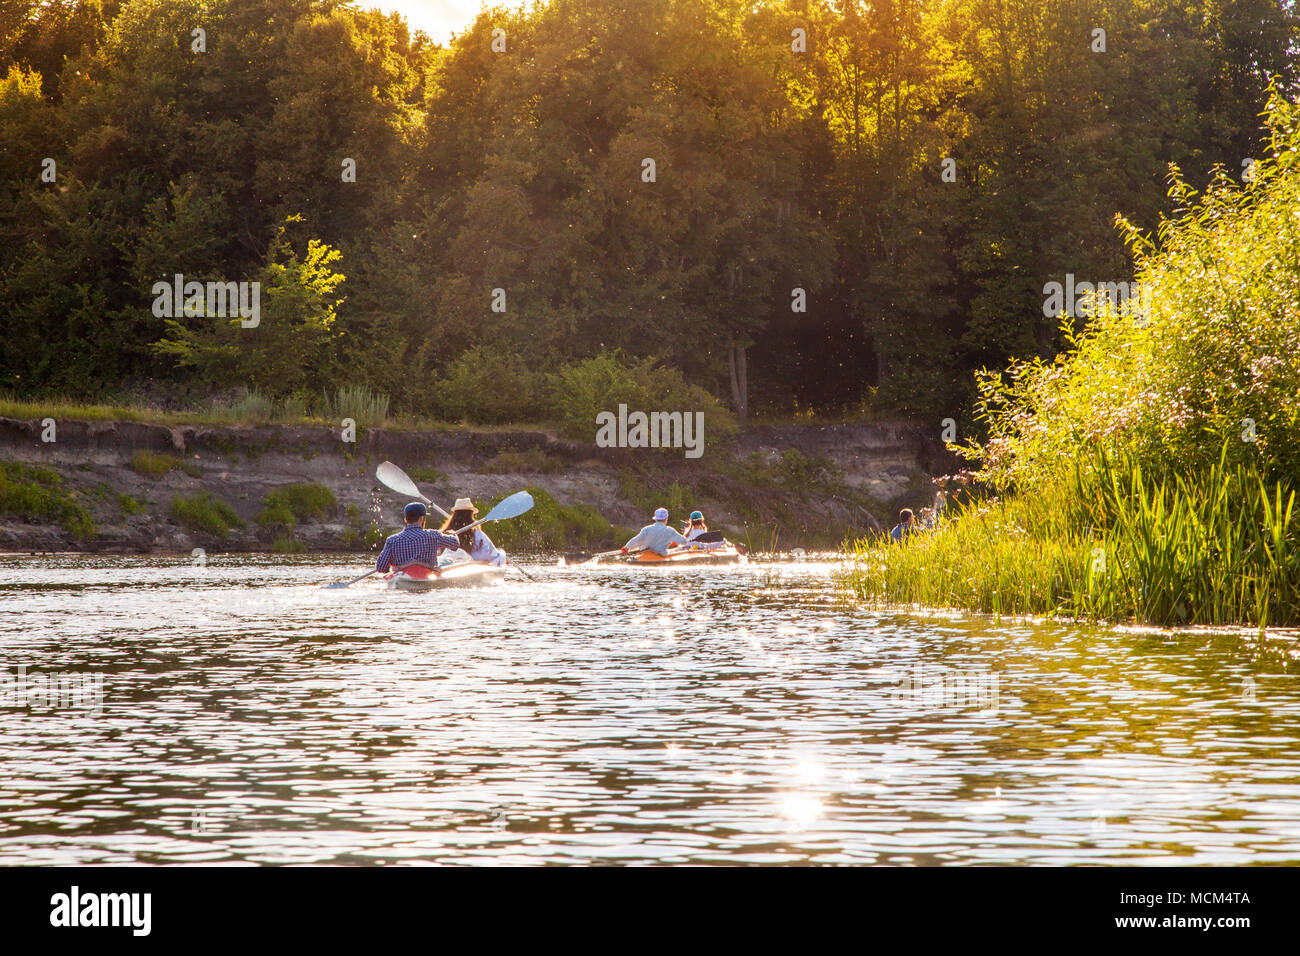 Les gens du kayak sur la rivière au jour d'été ensoleillé Banque D'Images